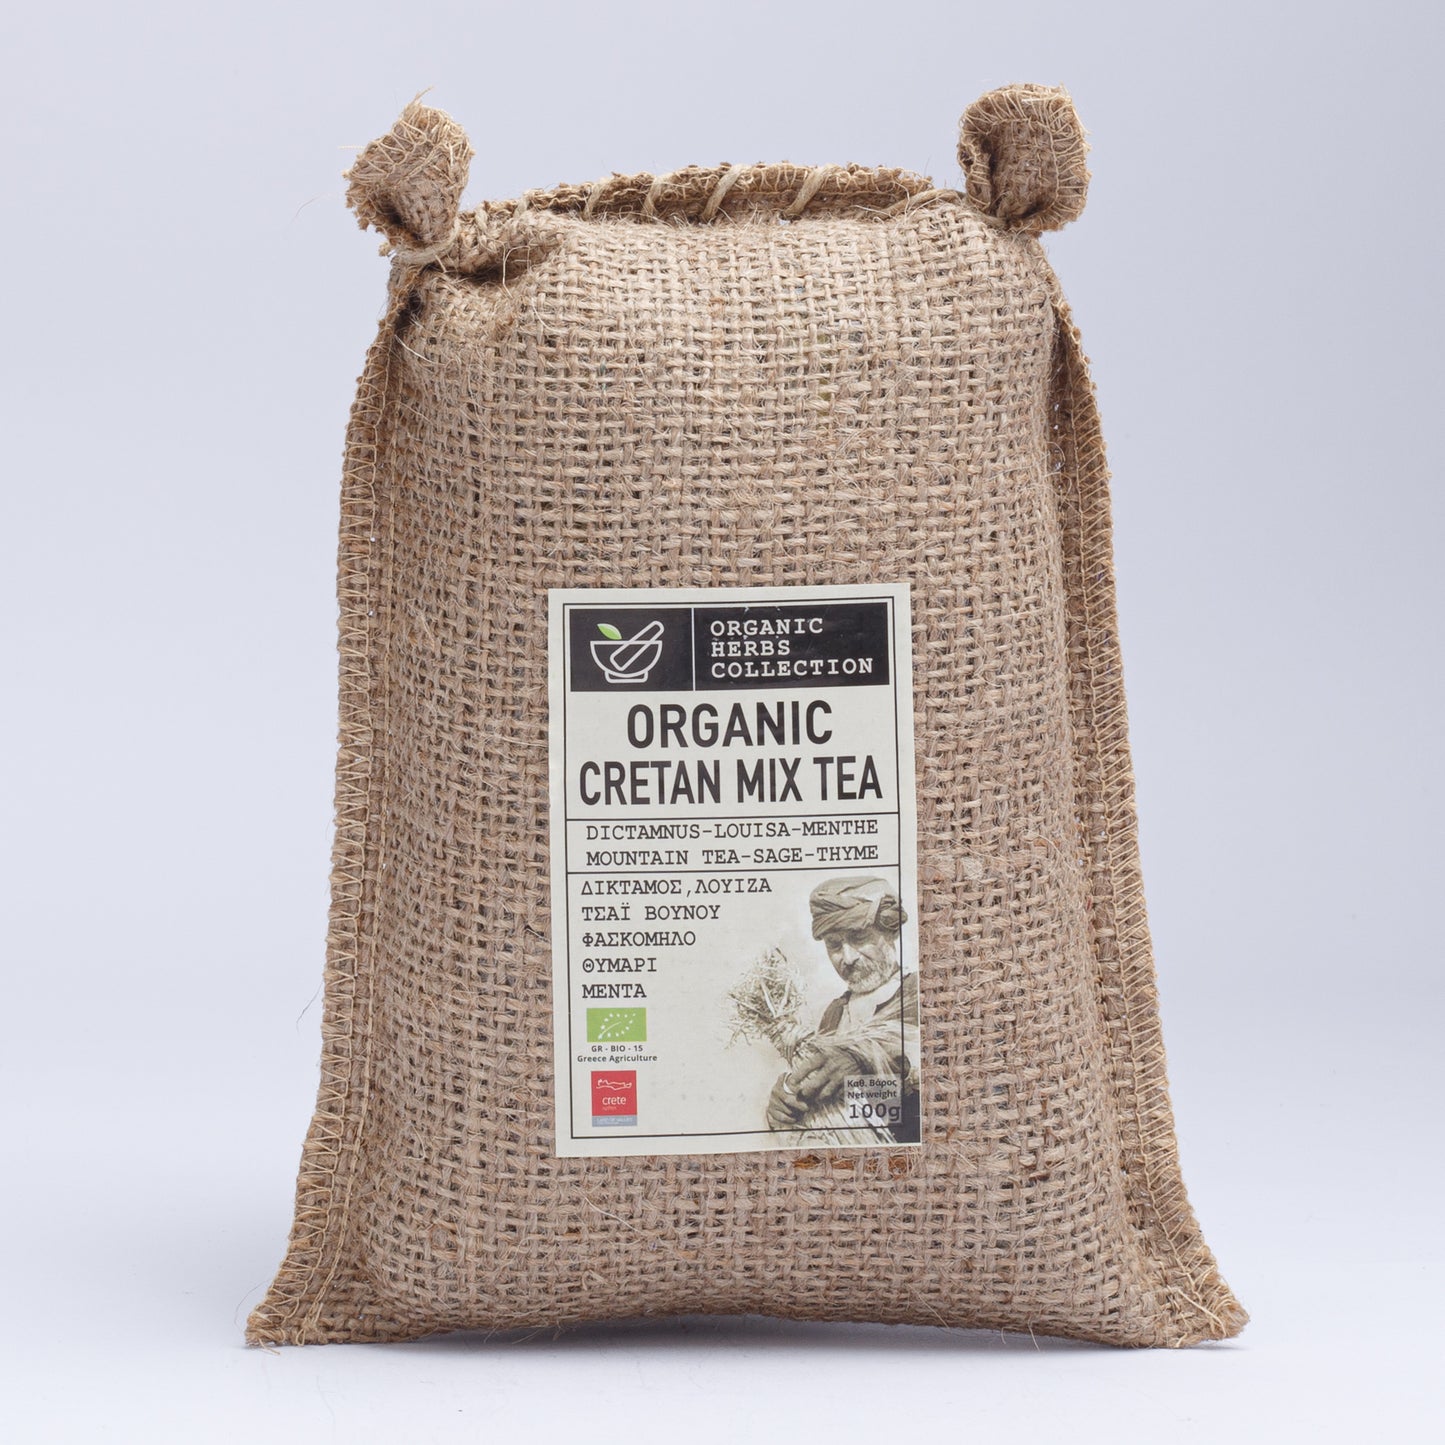 Olea Secret Organic Cretan Mix Tea (Dictamnus, Louisa, Menthe, Mountain Tea, Sage, Thyme) 100gr